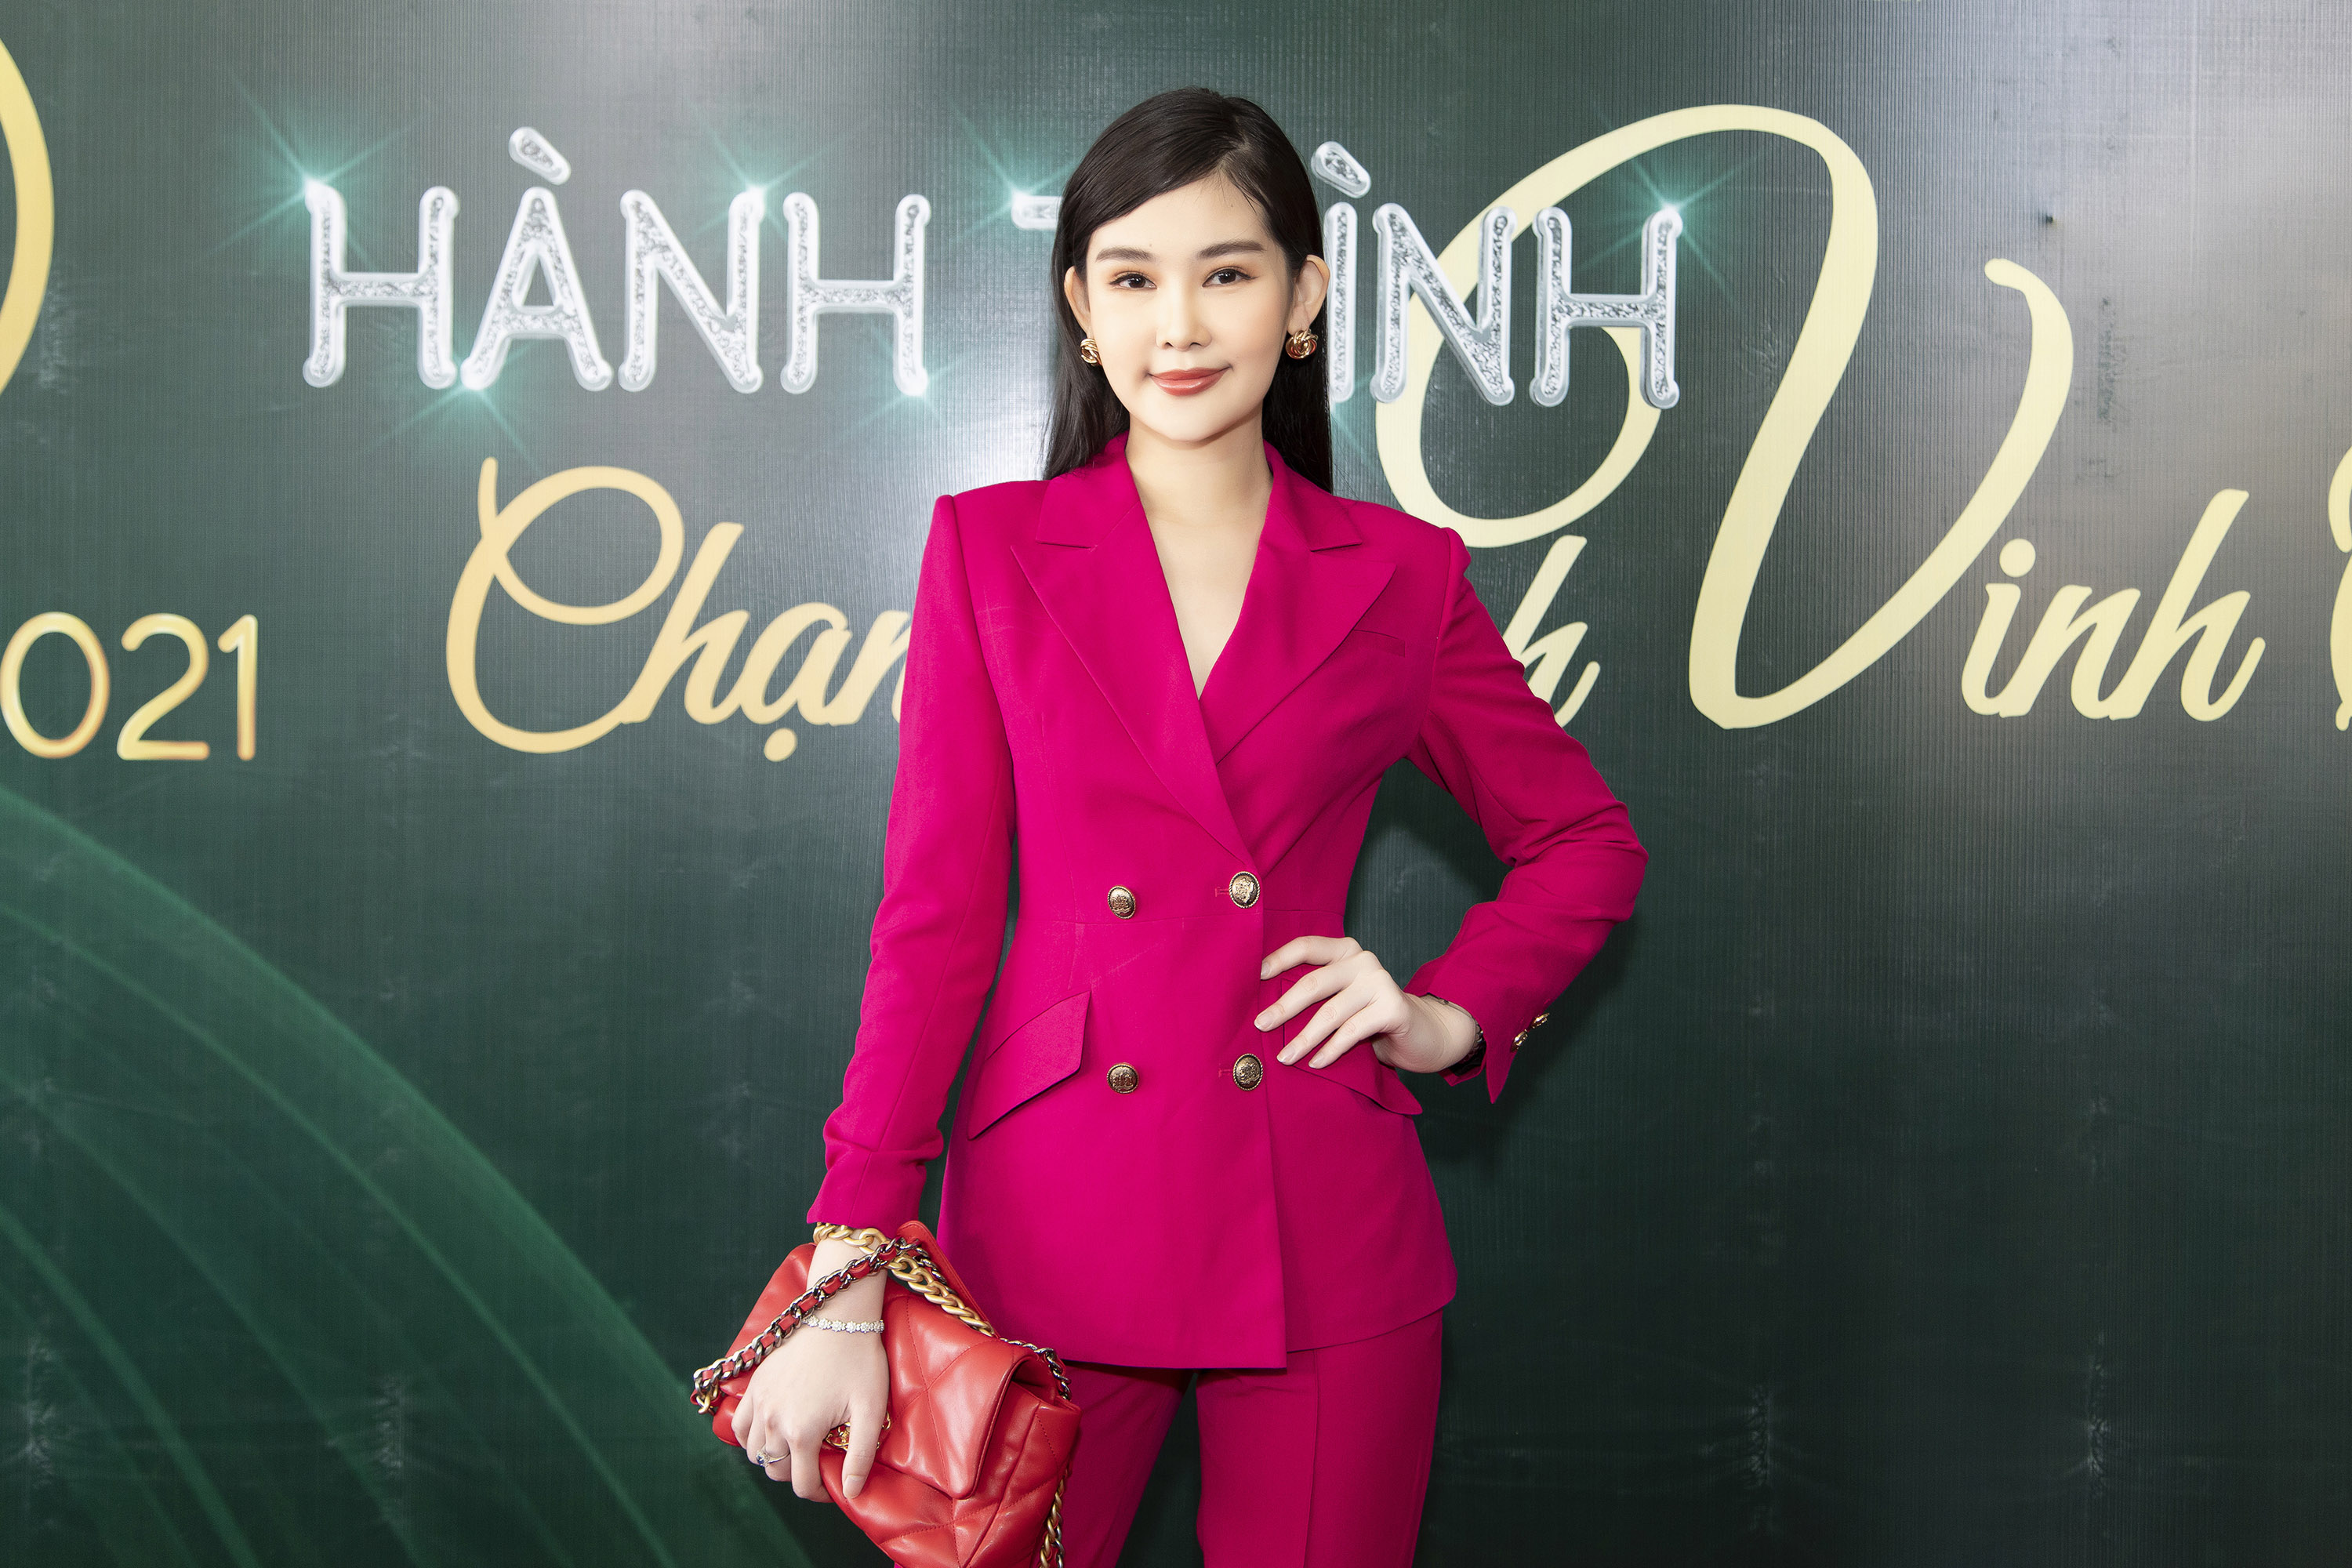 Ngoài siêu mẫu Võ Hoàng Yến sẽ là đảm nhận vị trí mentor cho các thí sinh. Hoa hậu cho biết rất háo hức với vai trò mới cho cuộc thi và rất nóng lòng được chia sẻ tất cả những kinh nghiệm của mình cho các bạn sinh viên.